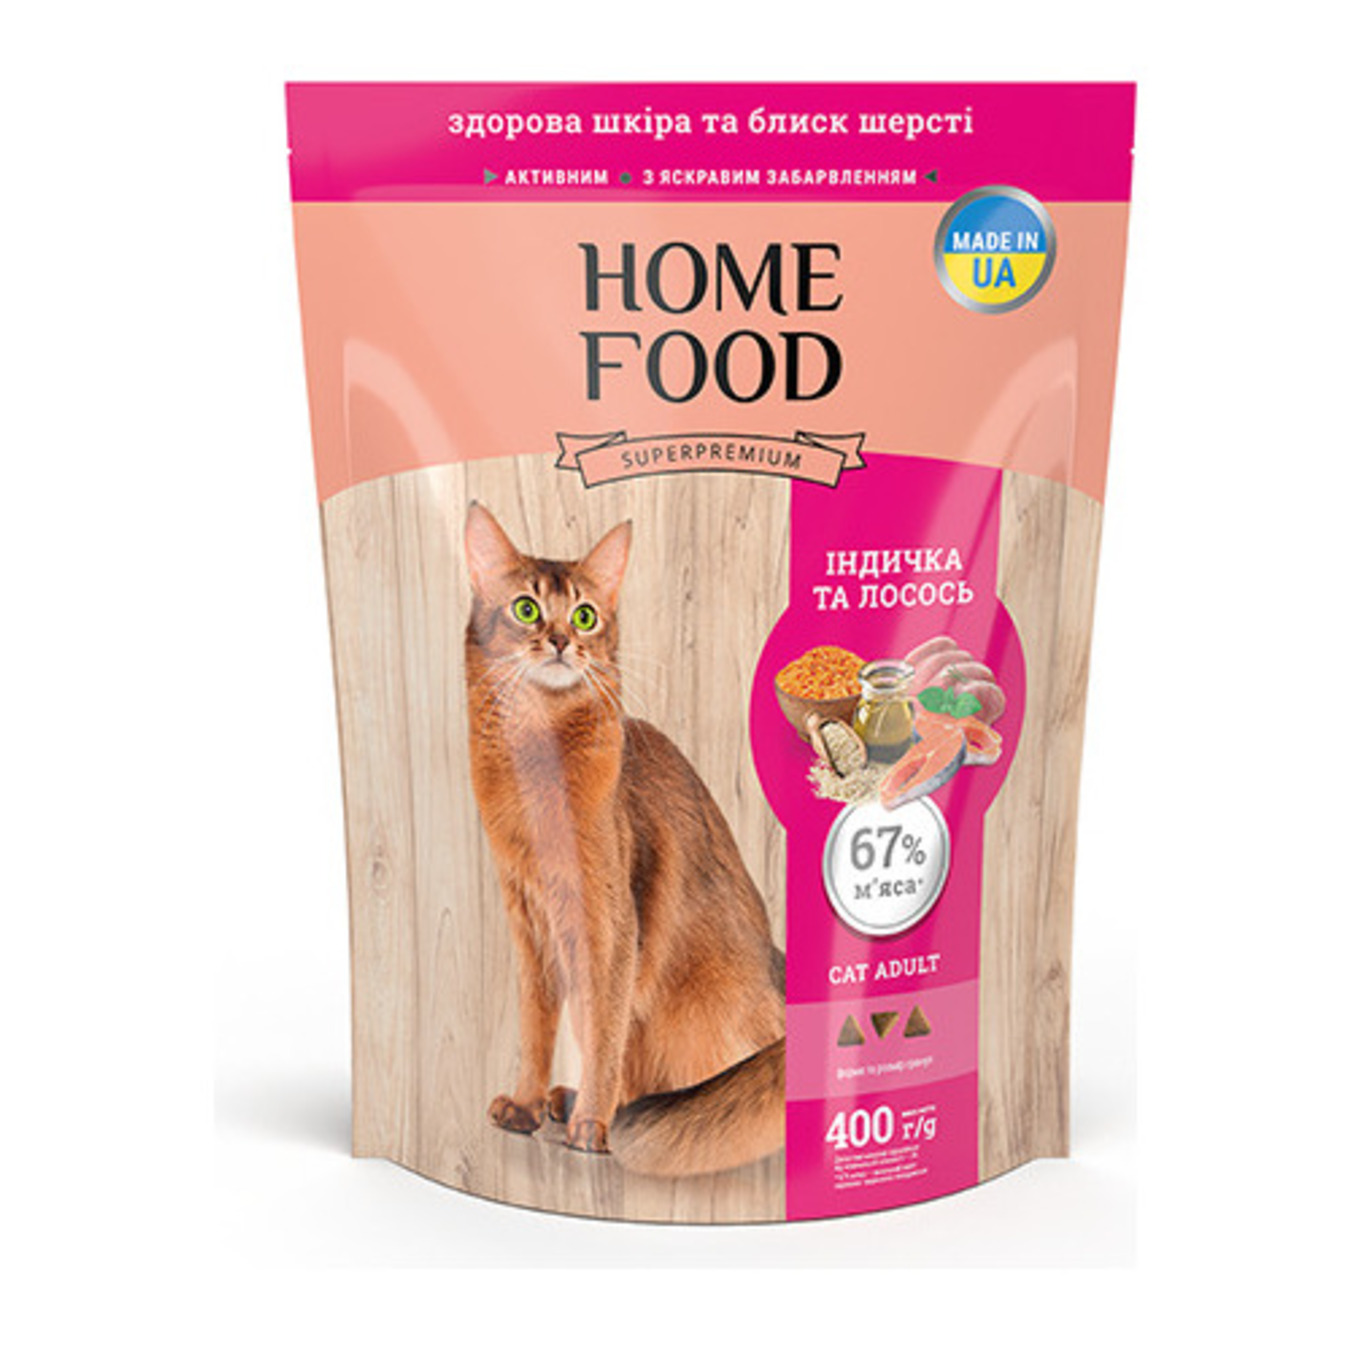 Корм для котів Home Food здорова шкіра та блиск шерсті сухий індичка та лосось 1,6кг